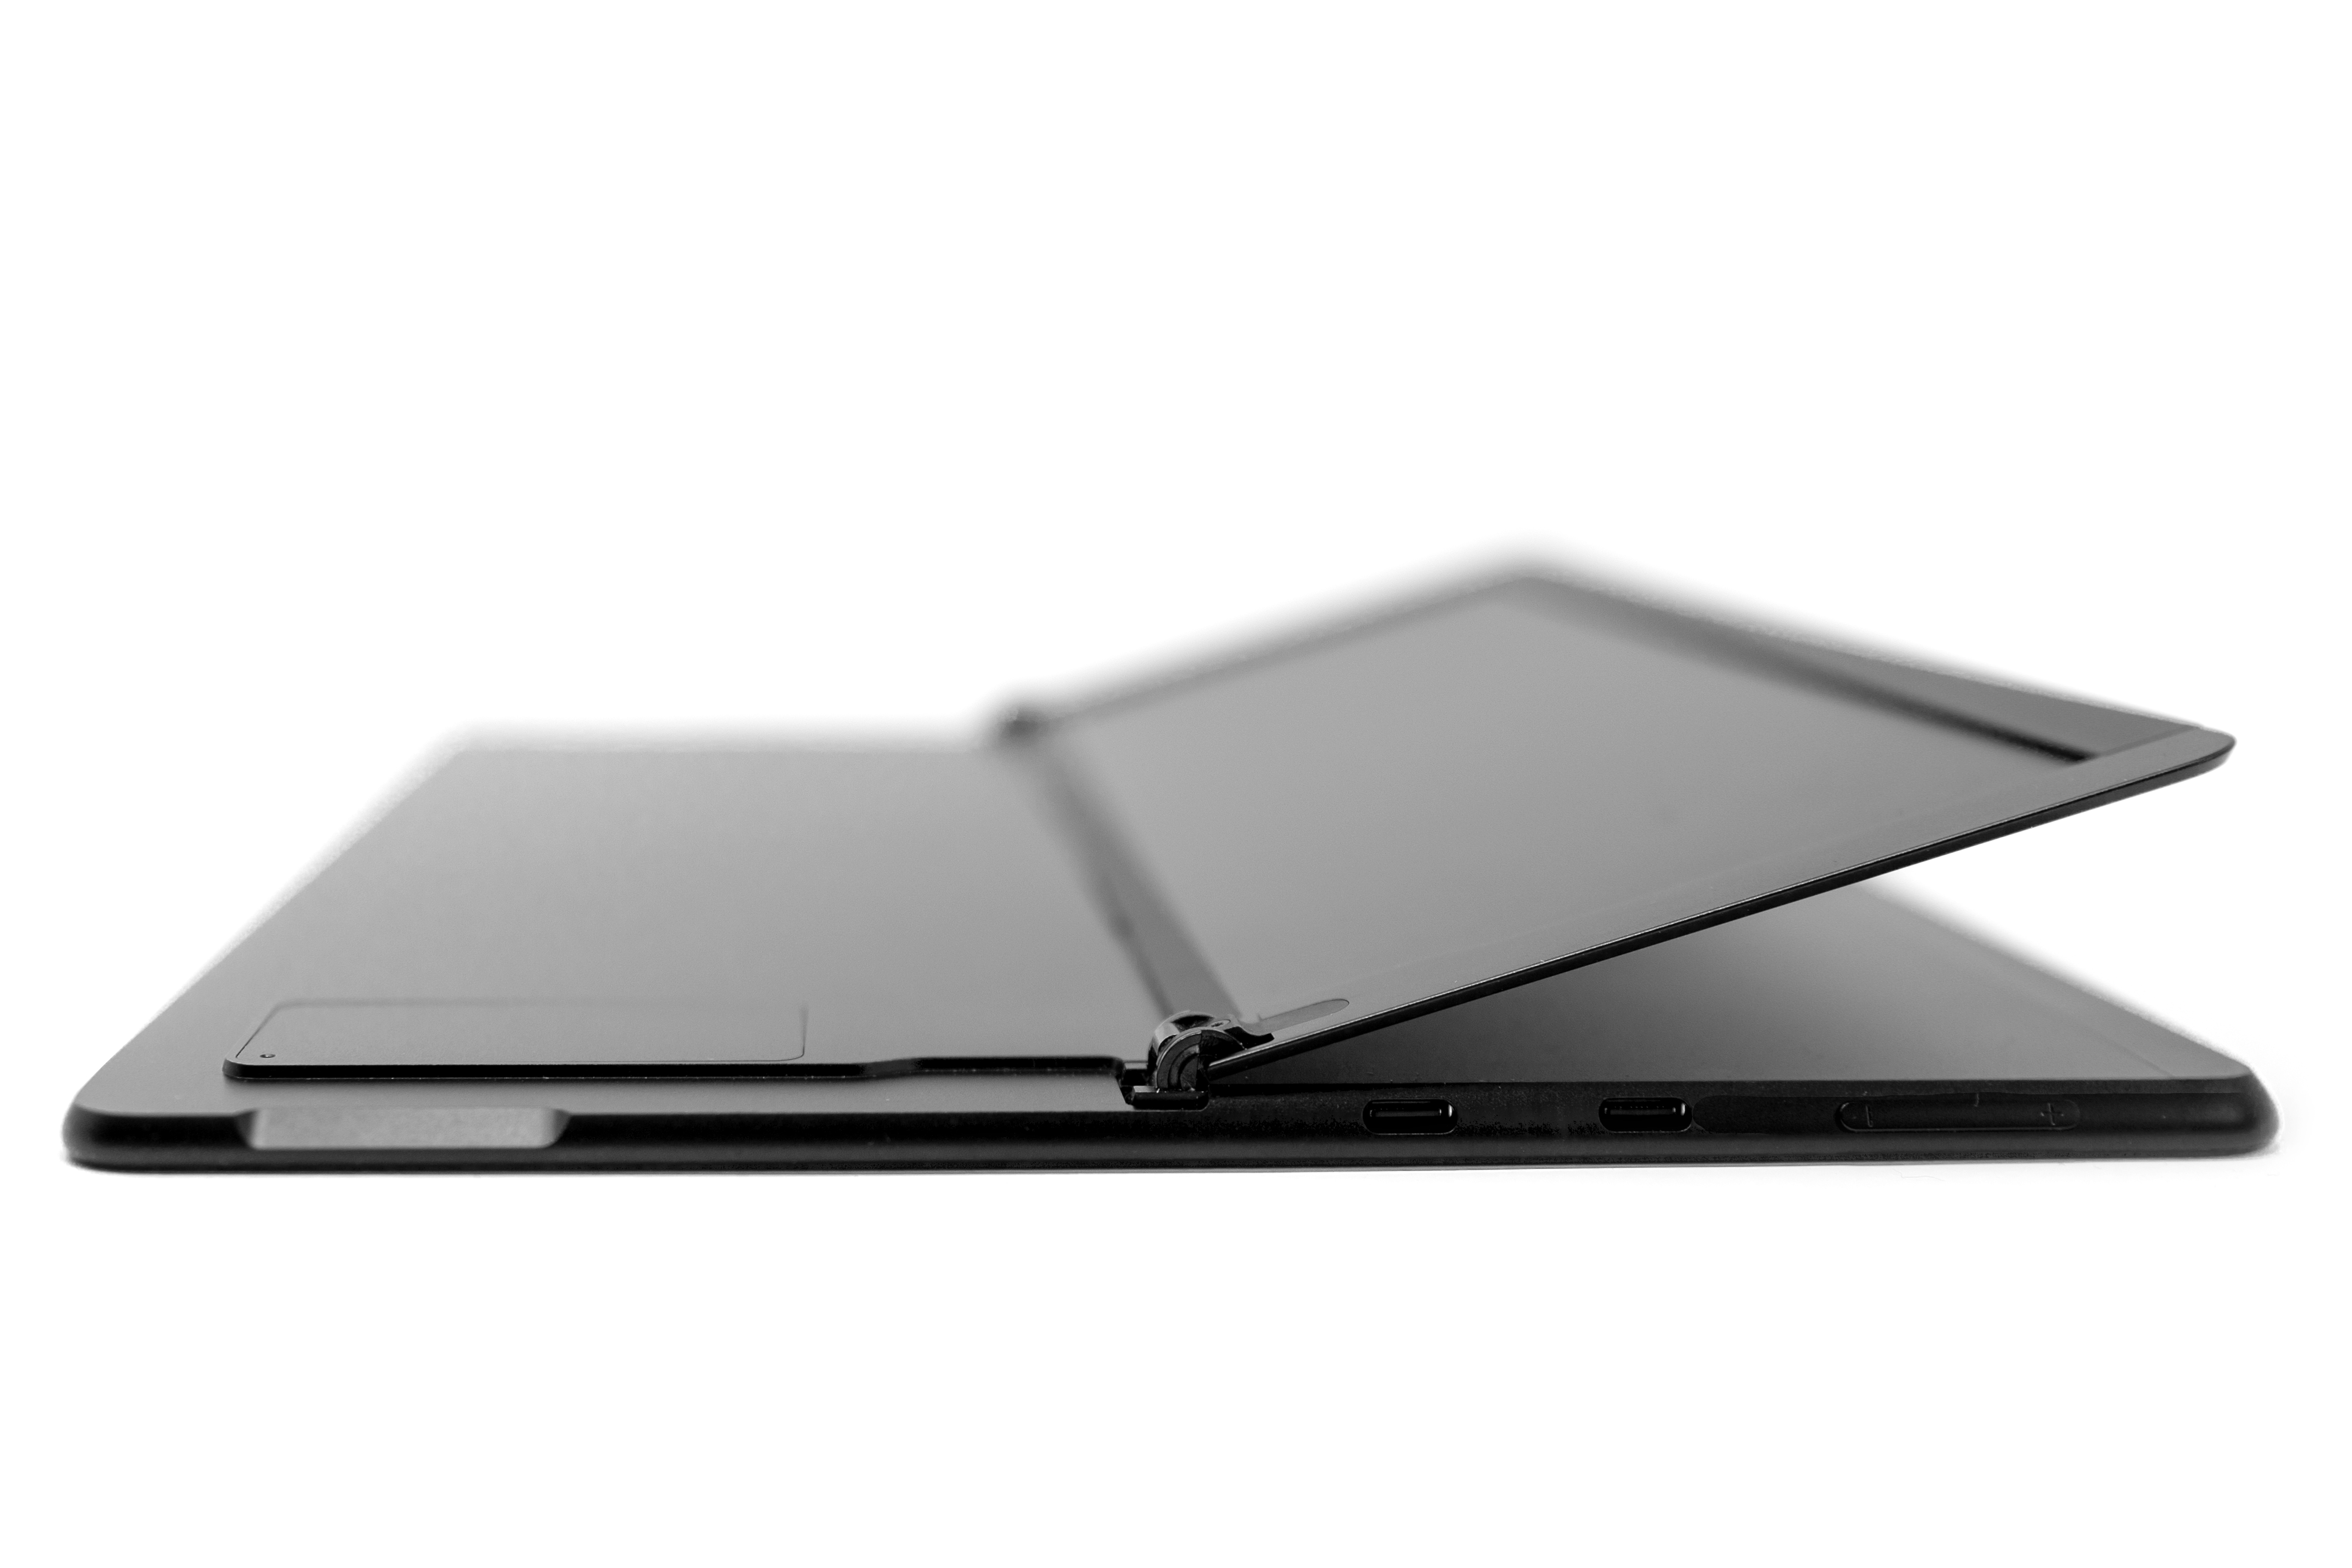 Zariadenie Surface Pro X s vyklopeným stojanom, aby boli viditeľné dvierka SIM karty.